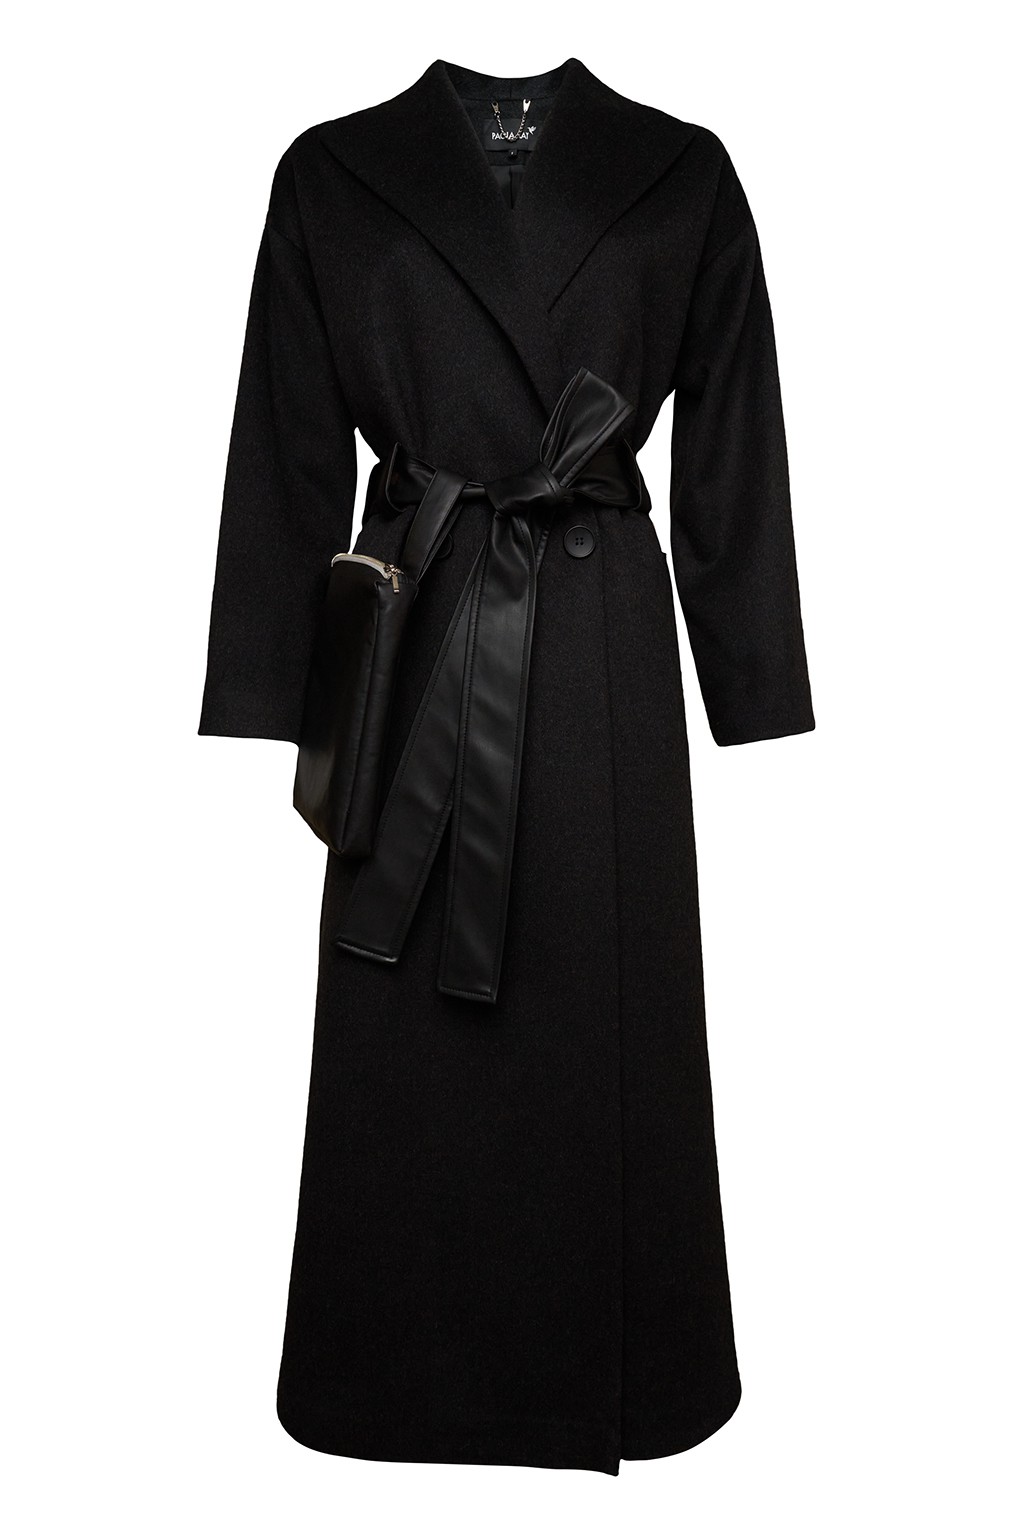 фото Пальто женское paola ray pr121-9001-01 черное xs/s